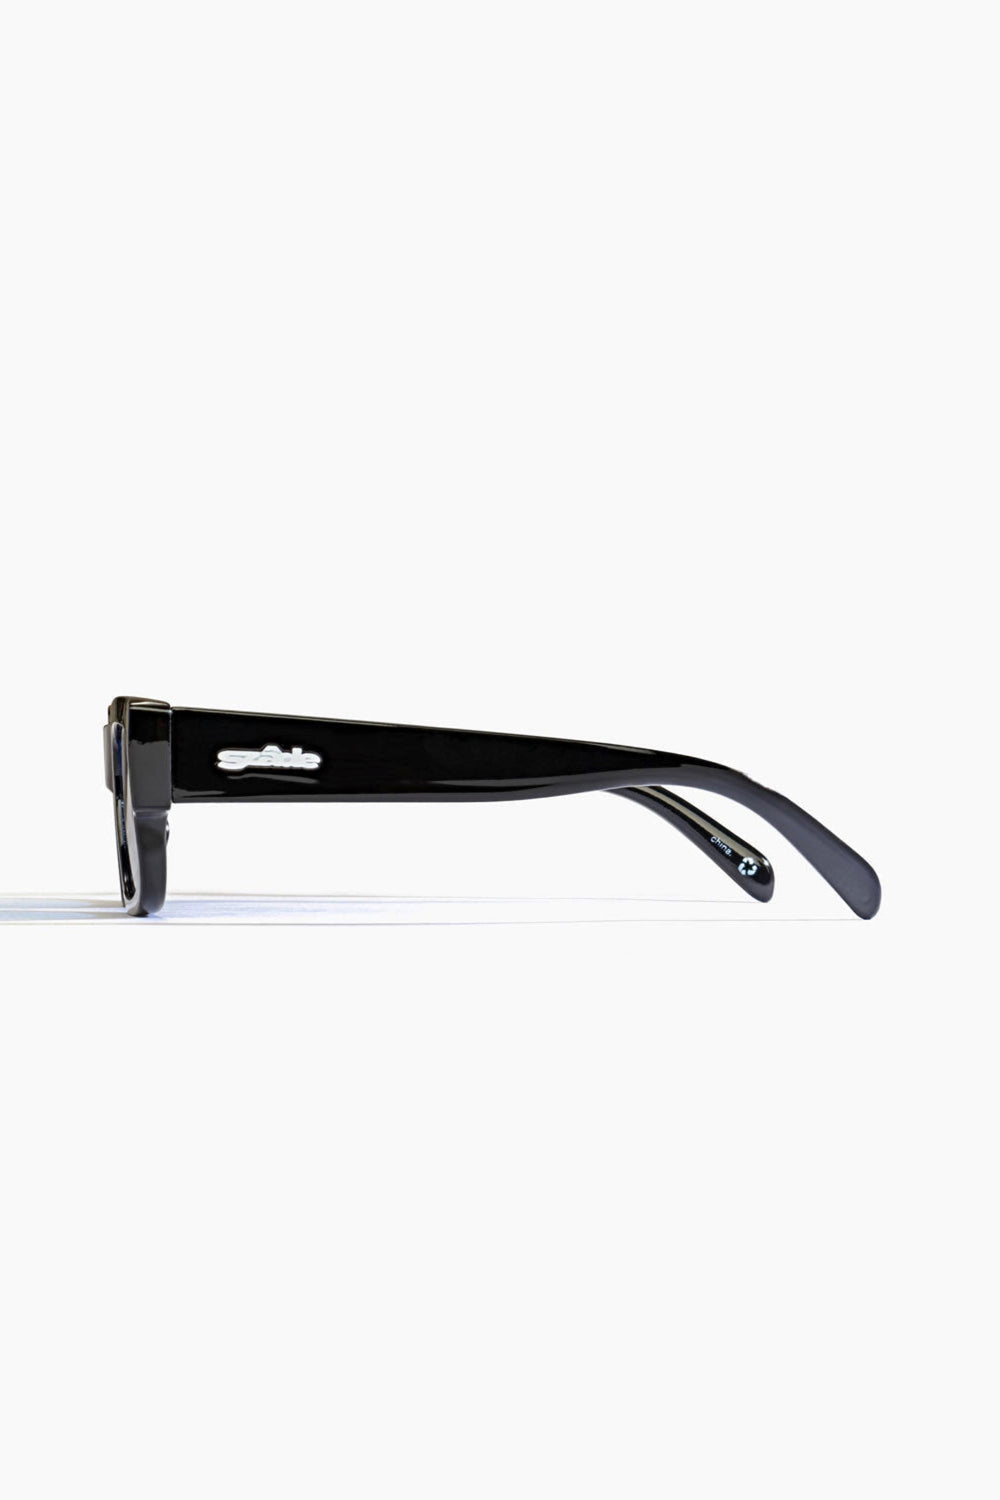 Elysium Porter Sunglasses